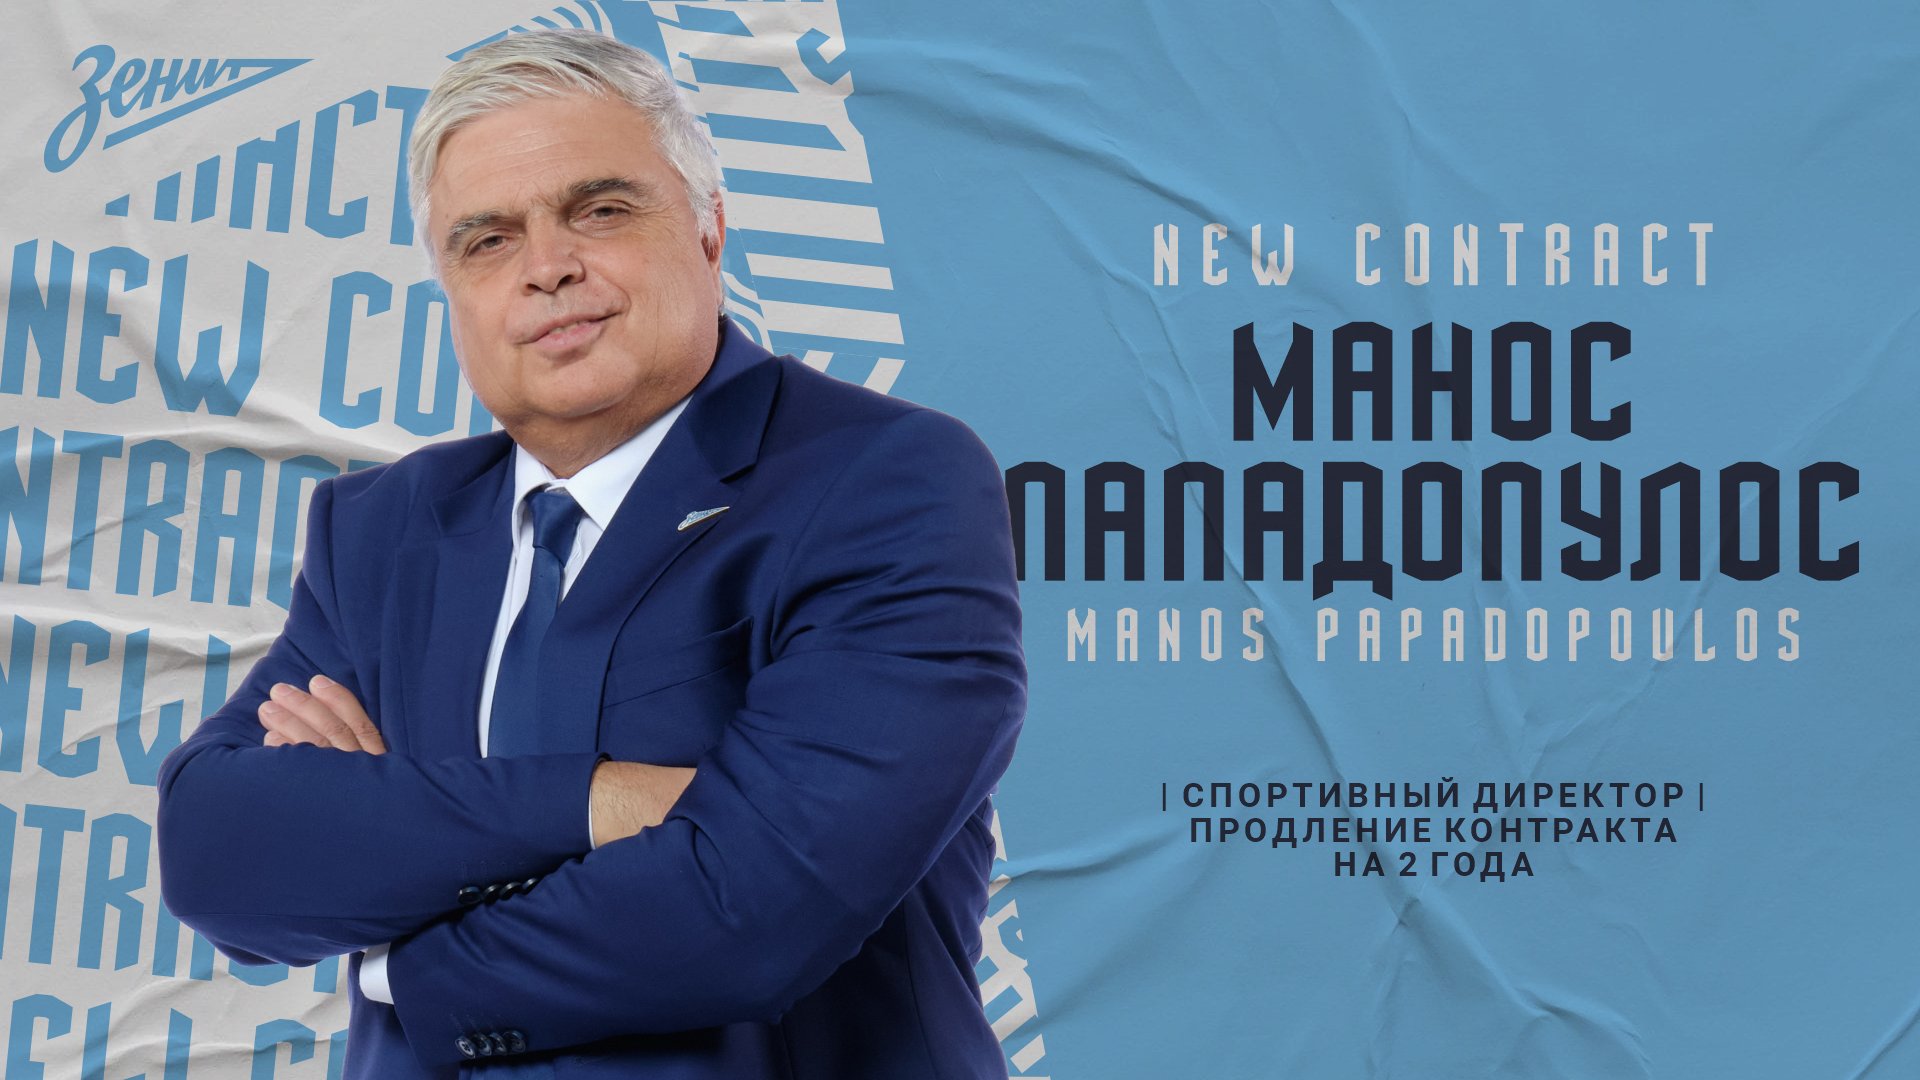 Μέχρι το 2024 στη Zenit ο Μάνος Παπαδόπουλος